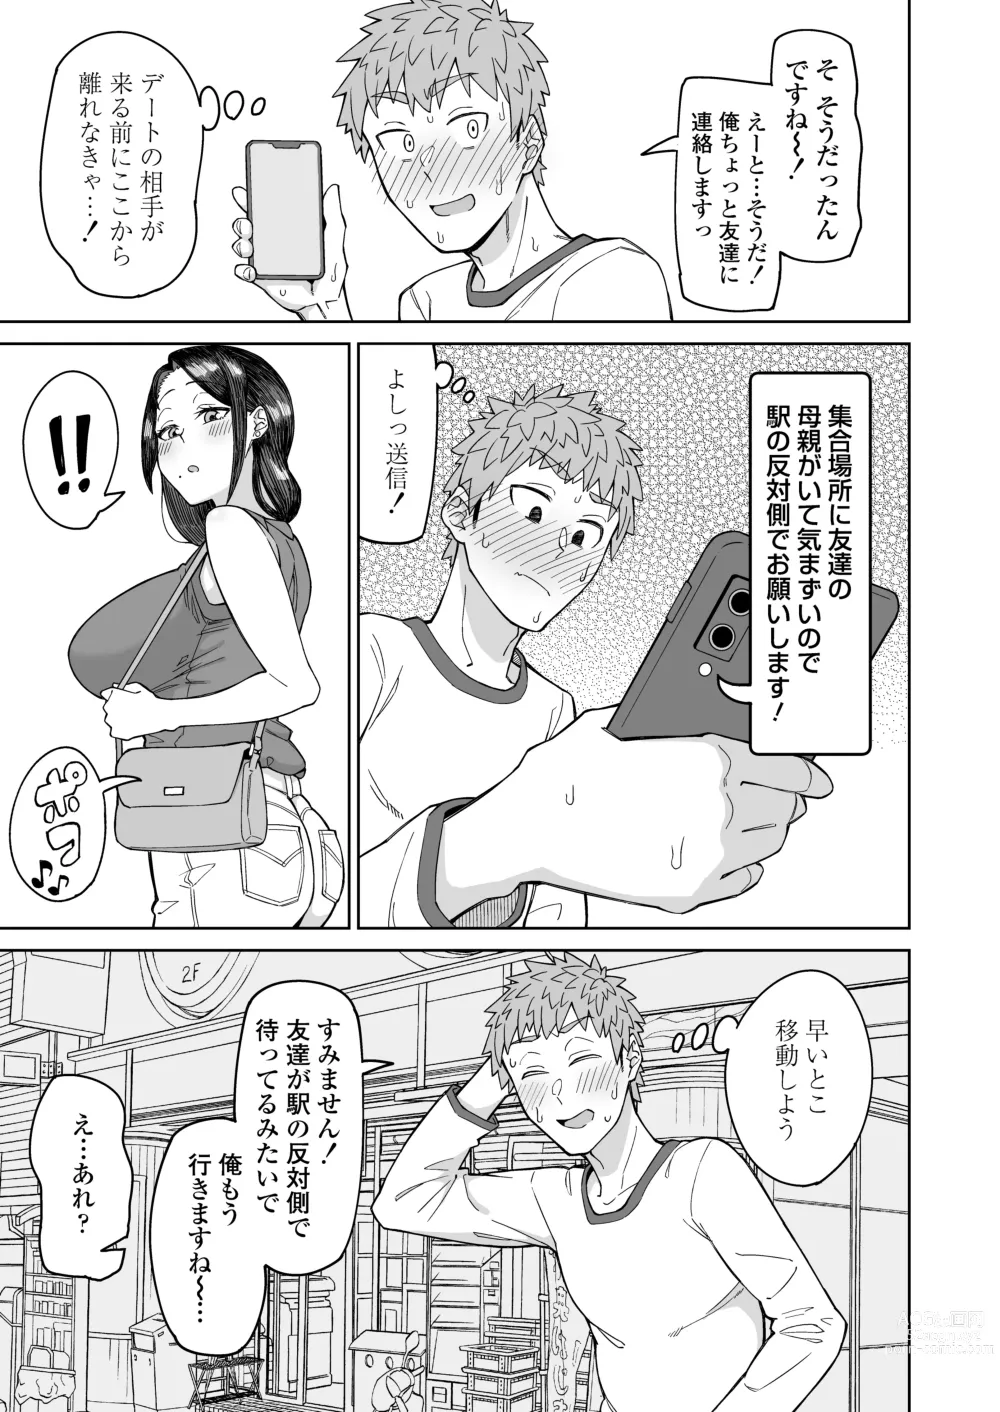 Page 6 of doujinshi Hatsukoi no Hito wa, Tomodachi no Mama.